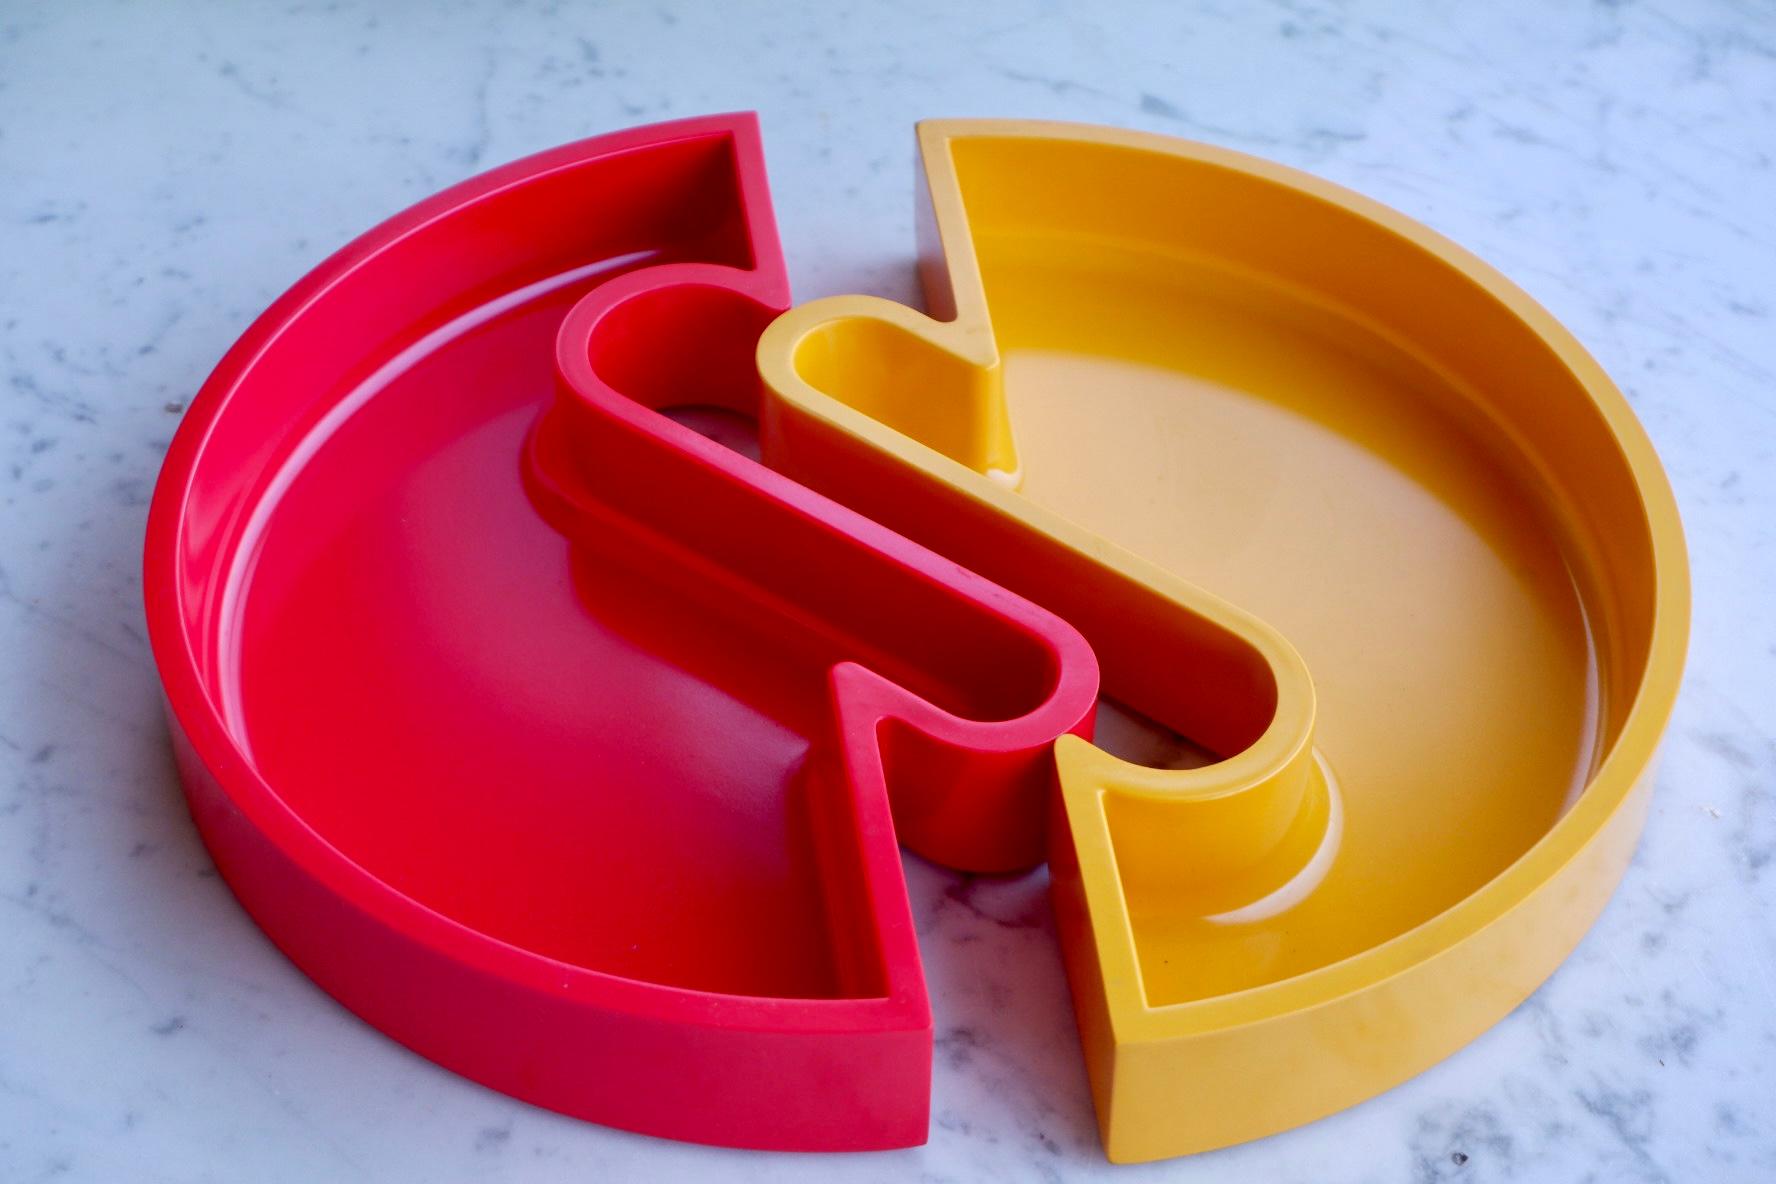 Plaque vintage de la marque italienne Lamperti conçue par Seiffert & Seiffert (marqué). La plaque se compose de deux éléments séparés qui peuvent être assemblés et est fabriquée en plastique dur jaune et rouge. L'état est excellent.